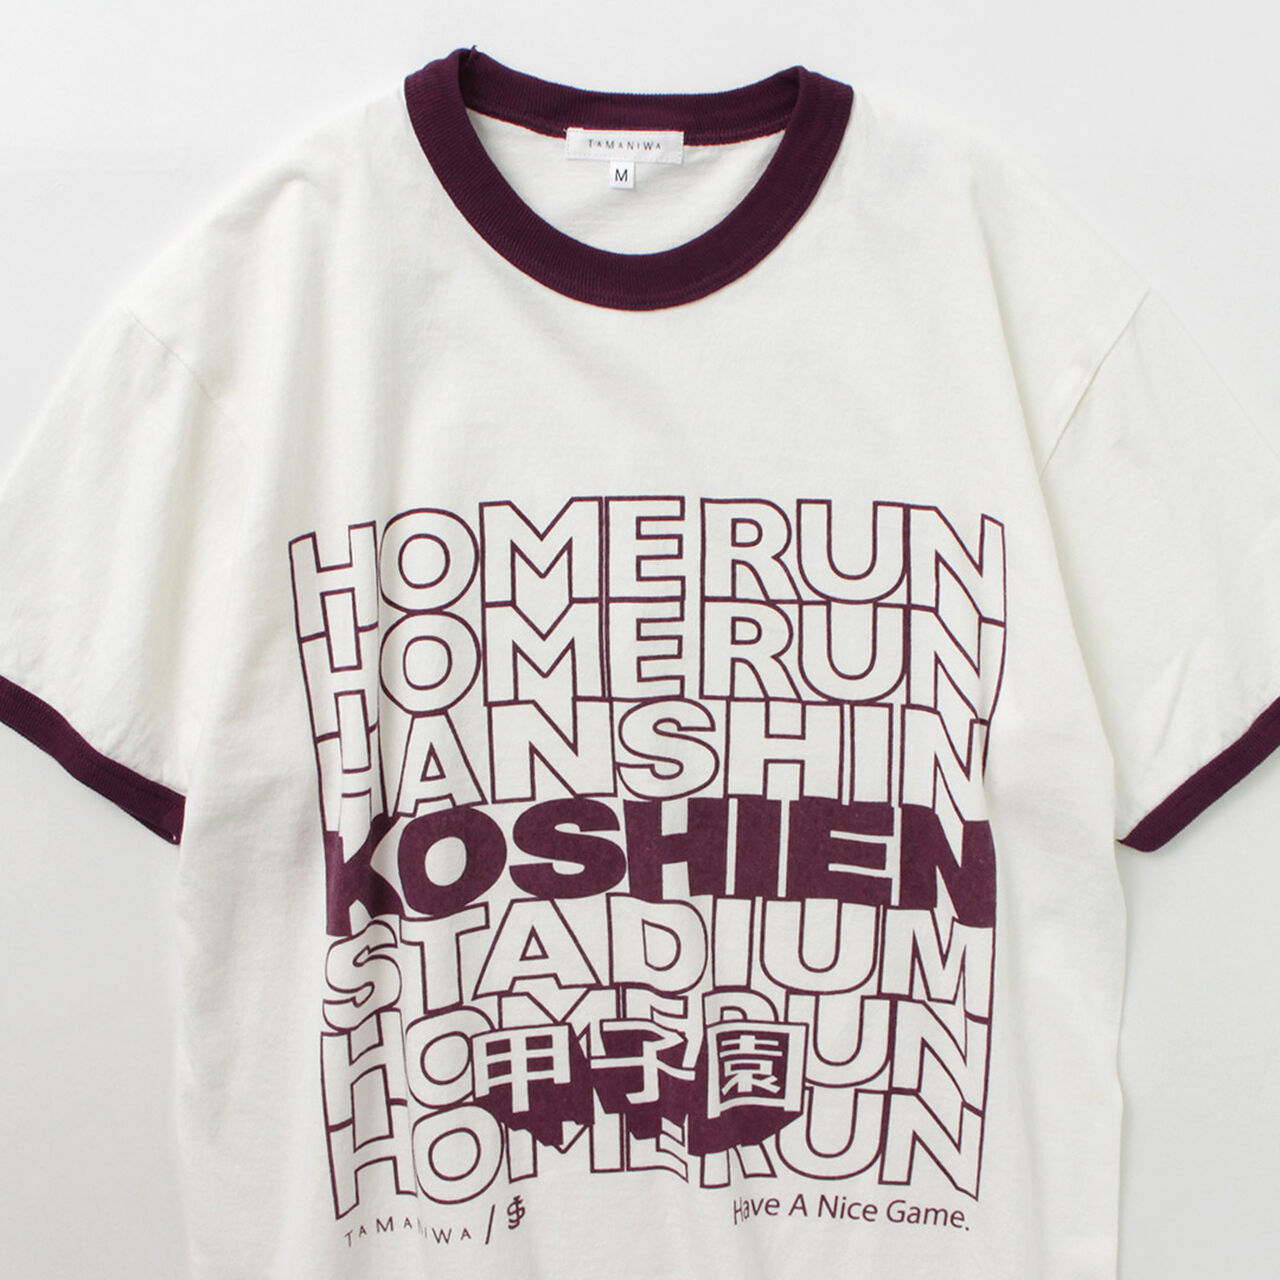 Koshien Home Run T-shirt,, large image number 7